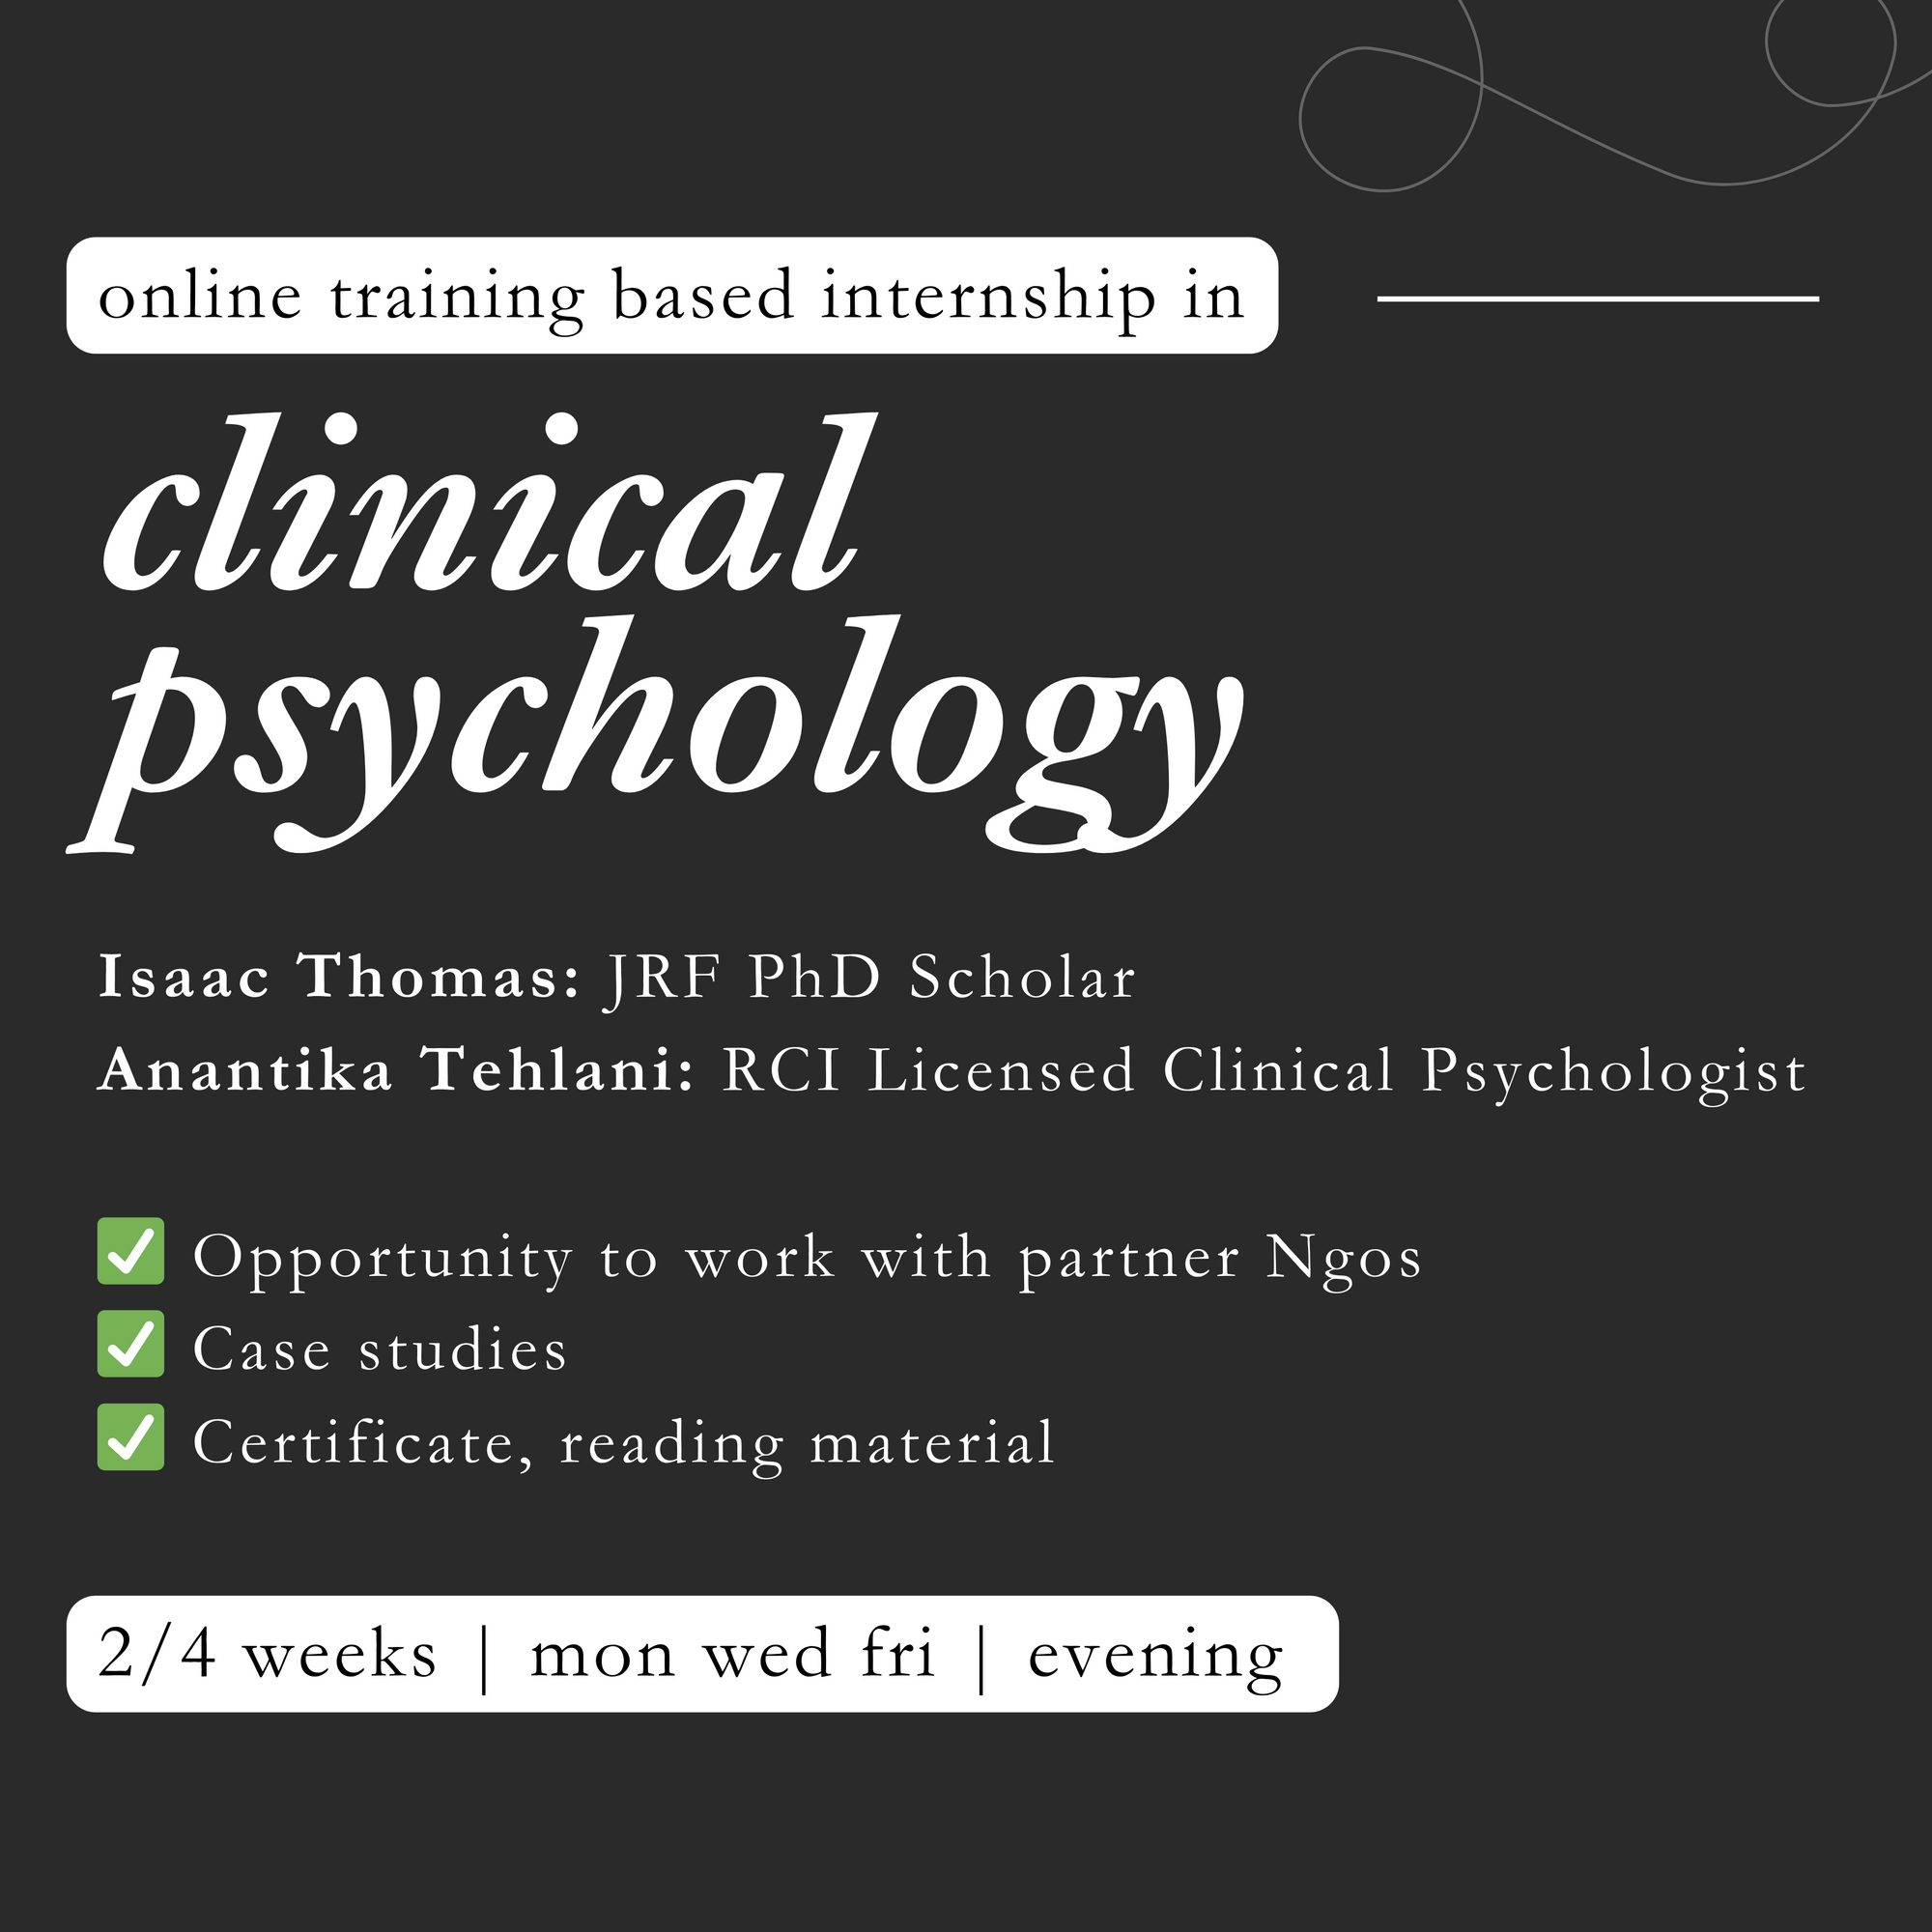 Clinical Psychology Training based Internship